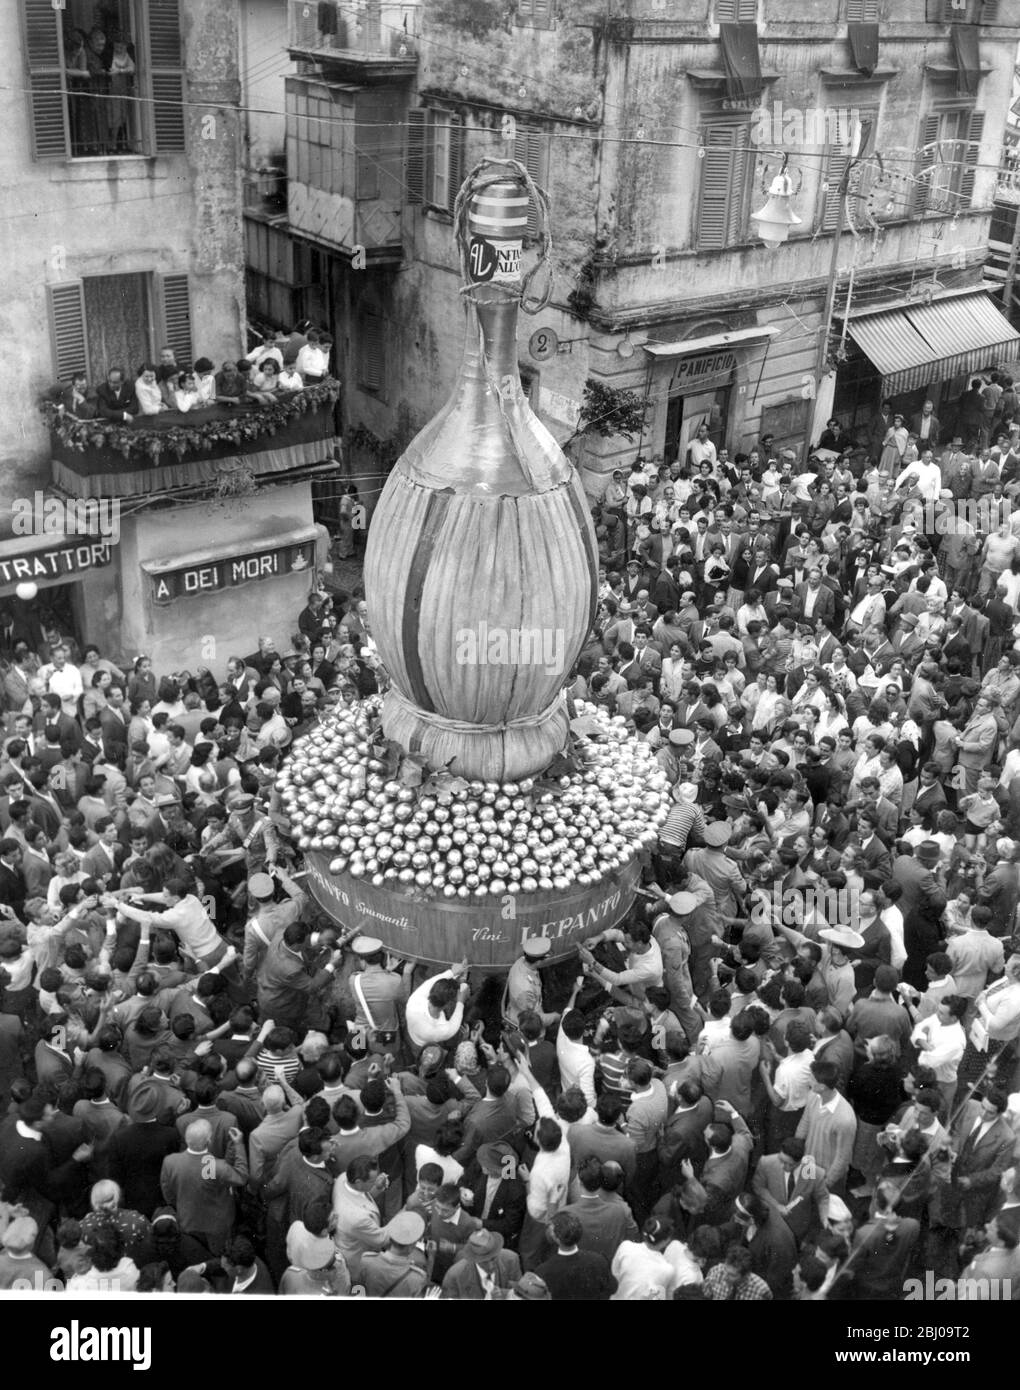 Marino , Italien . - Städte jährlichen Weinfest am ersten sonntag im Oktober gefeiert. - riesige Flasche auf dem Brunnen in der Mitte des Platzes und Wein platziert wird kostenlos an die versammelten Menge verteilt. - Oktober 1958 - - Stockfoto